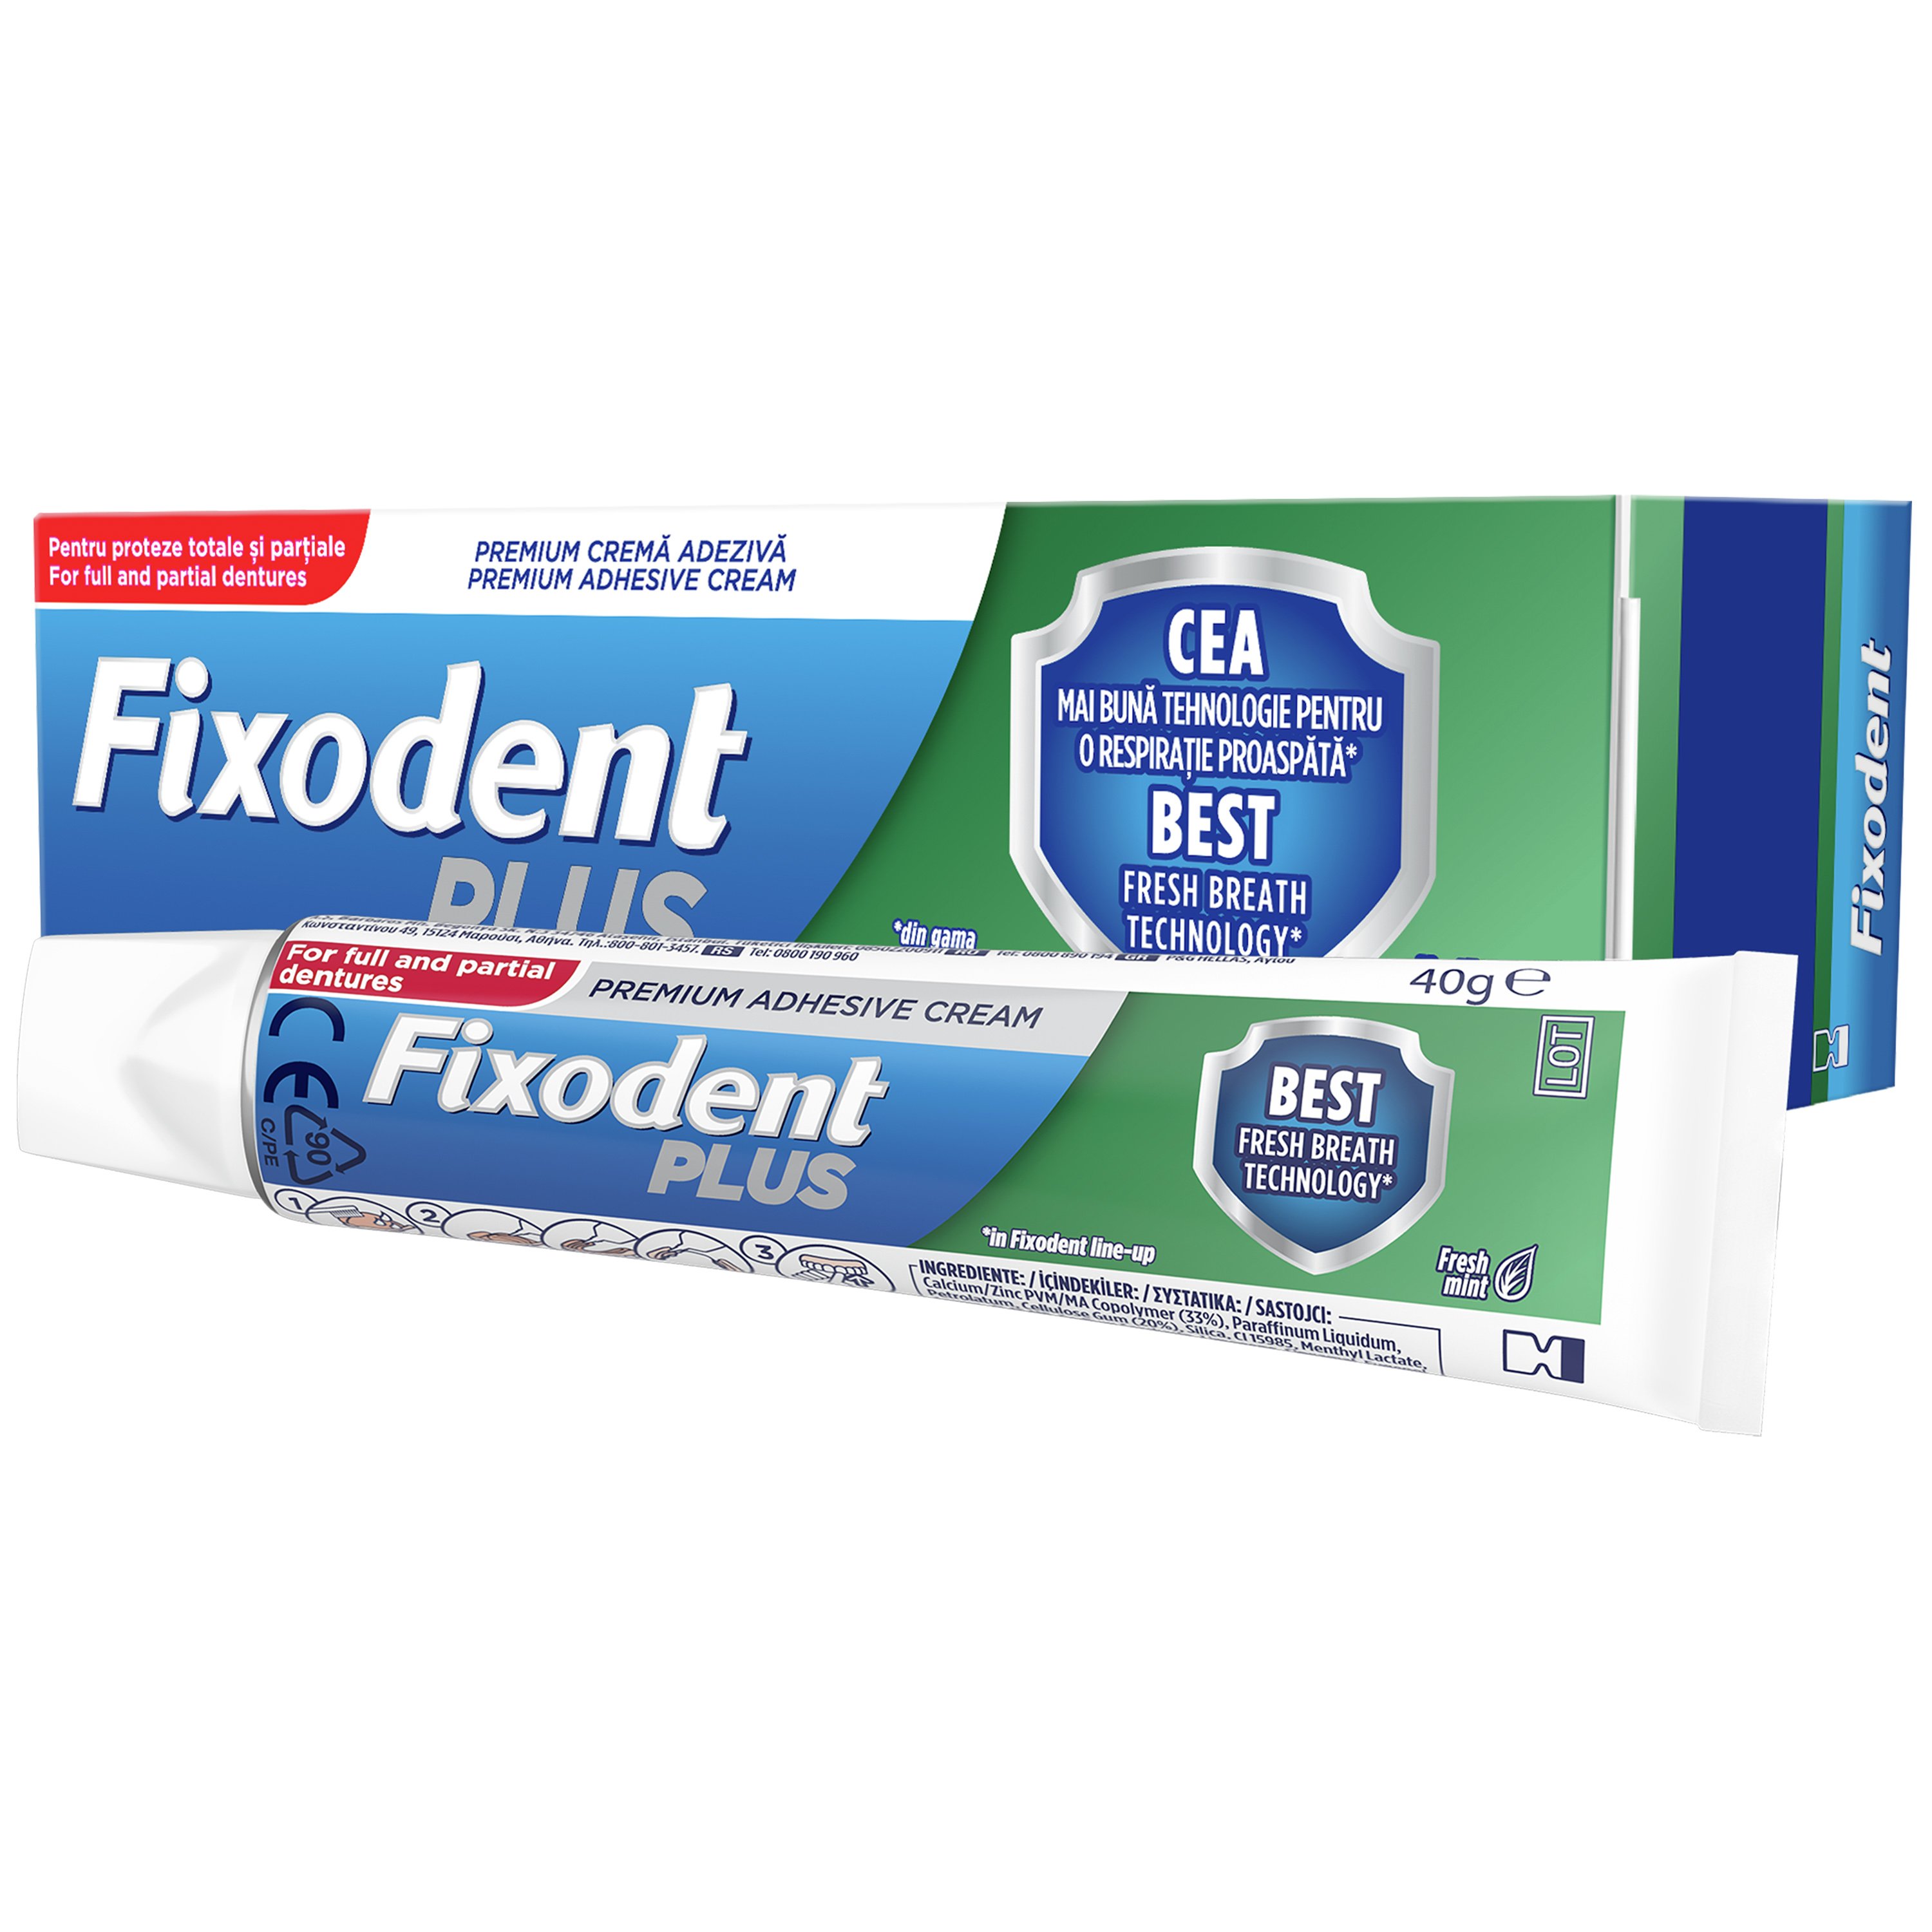 Fixodent Fixodent Plus Best Fresh Breath Technology Στερεωτική Κρέμα για Τεχνητές Οδοντοστοιχίες, Κατά της Δυσάρεστης Αναπνοής 40gr